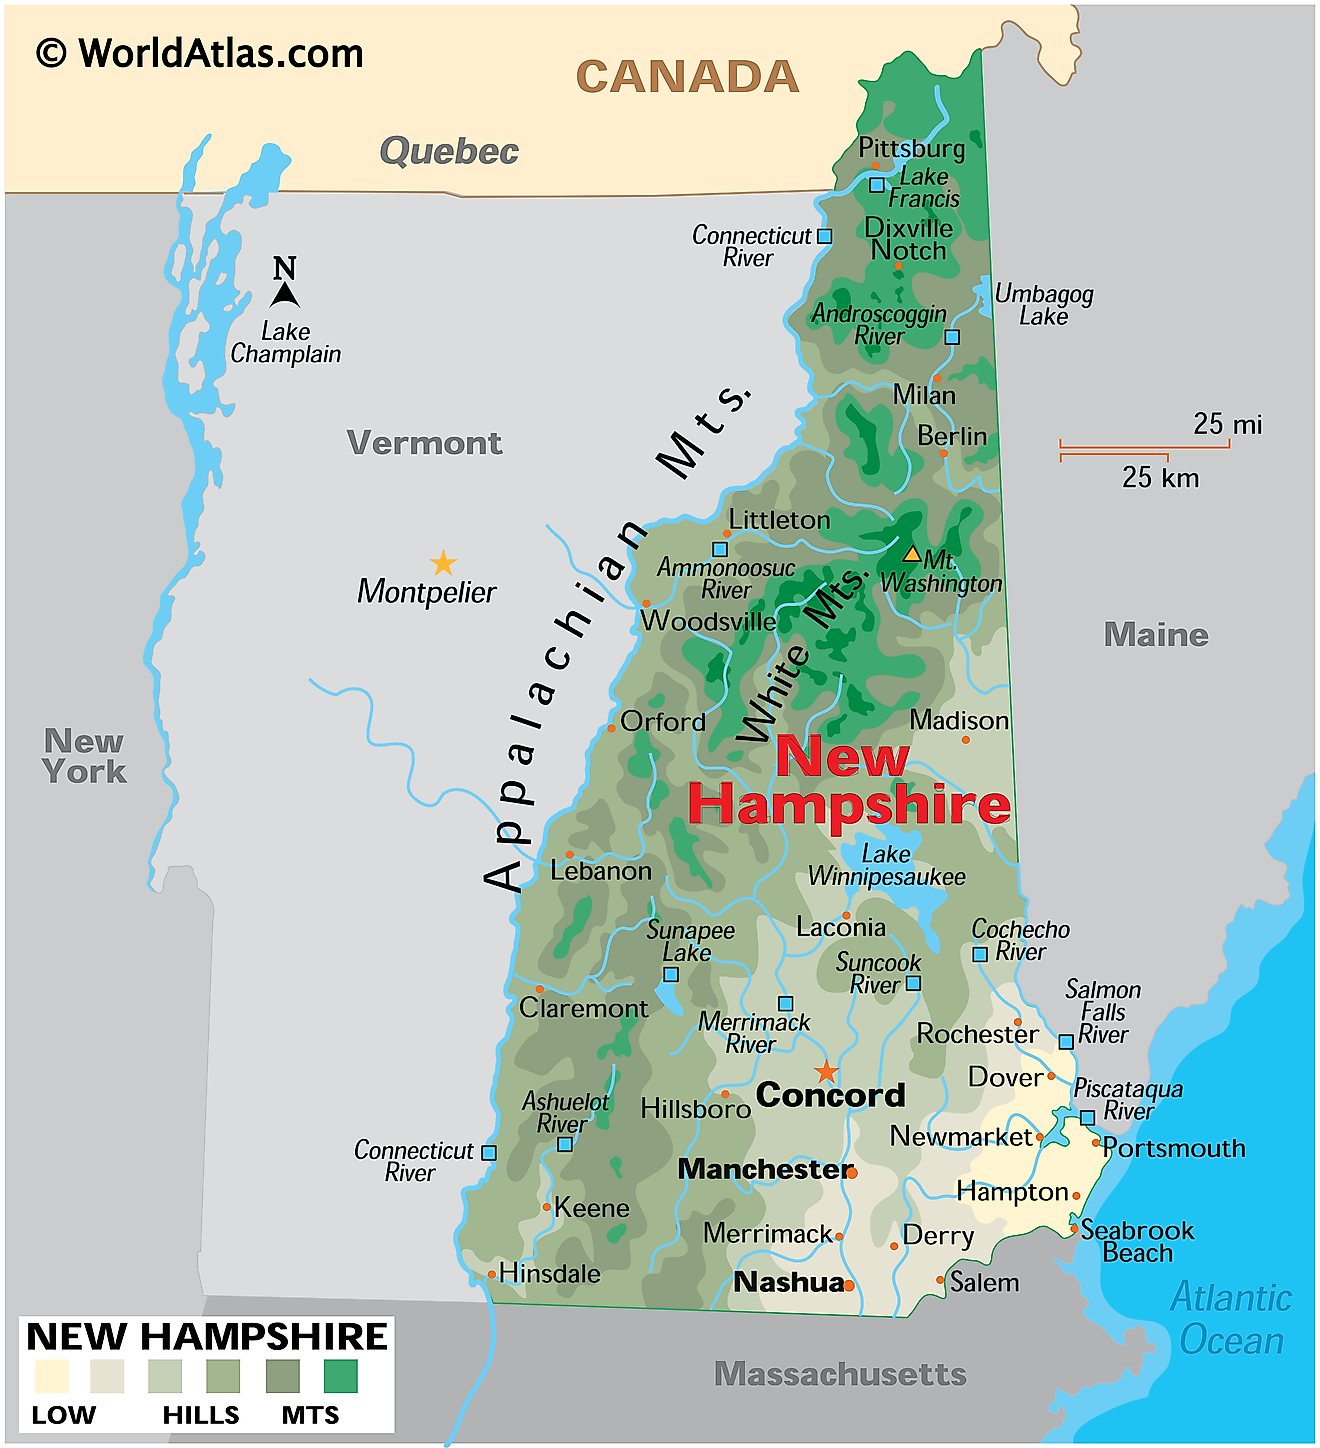 New Hampshire fizikai térképe. Megmutatja New Hampshire fizikai jellemzőit, beleértve a hegyvonulatokat, erdőket, nagyobb folyókat és tavakat. 